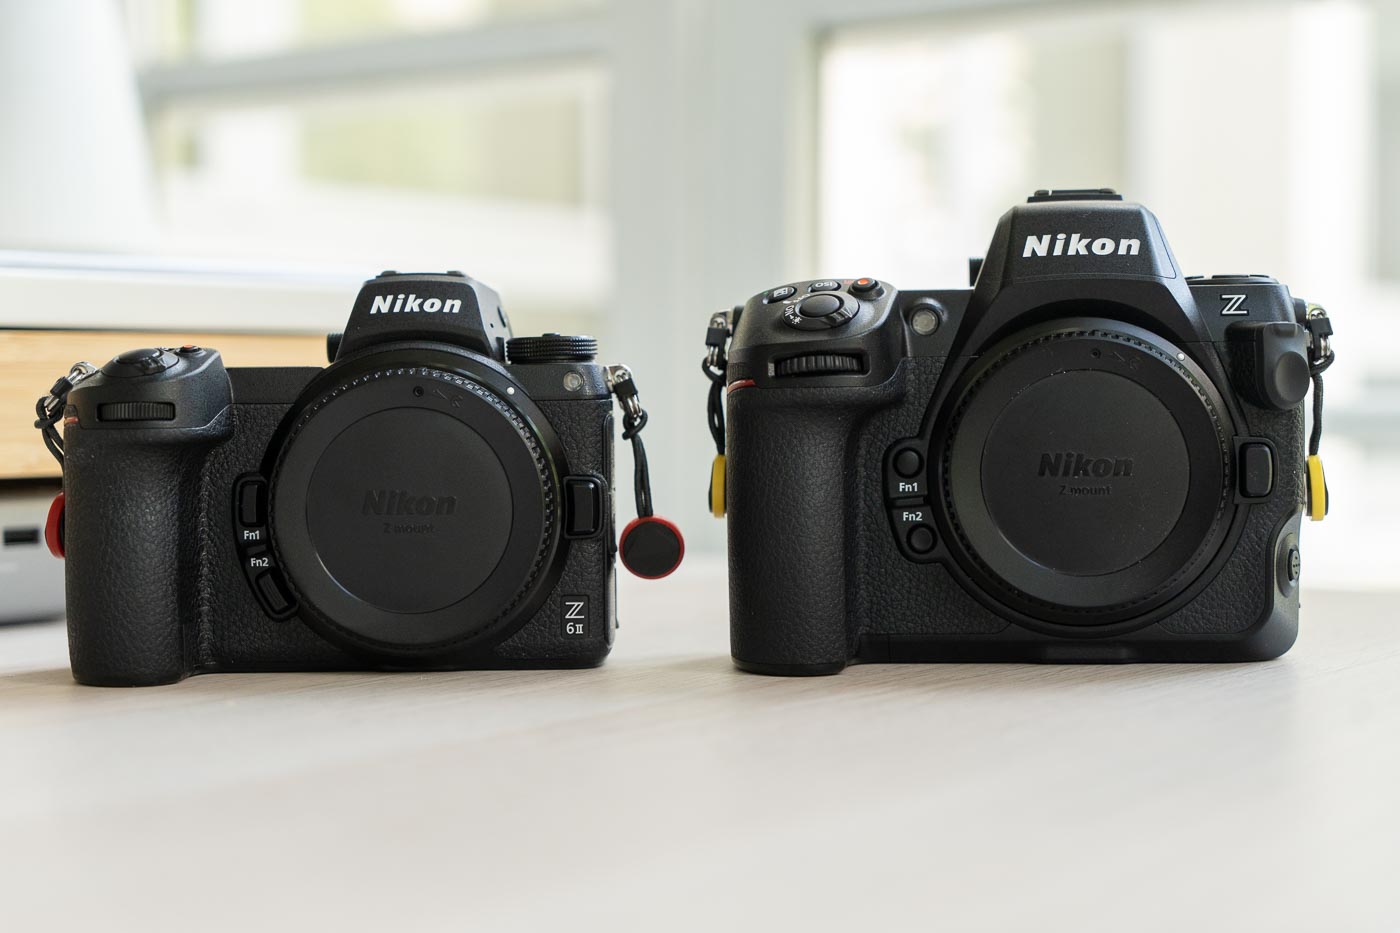 Test Phototrend Nikon Z8 vs Z6 II